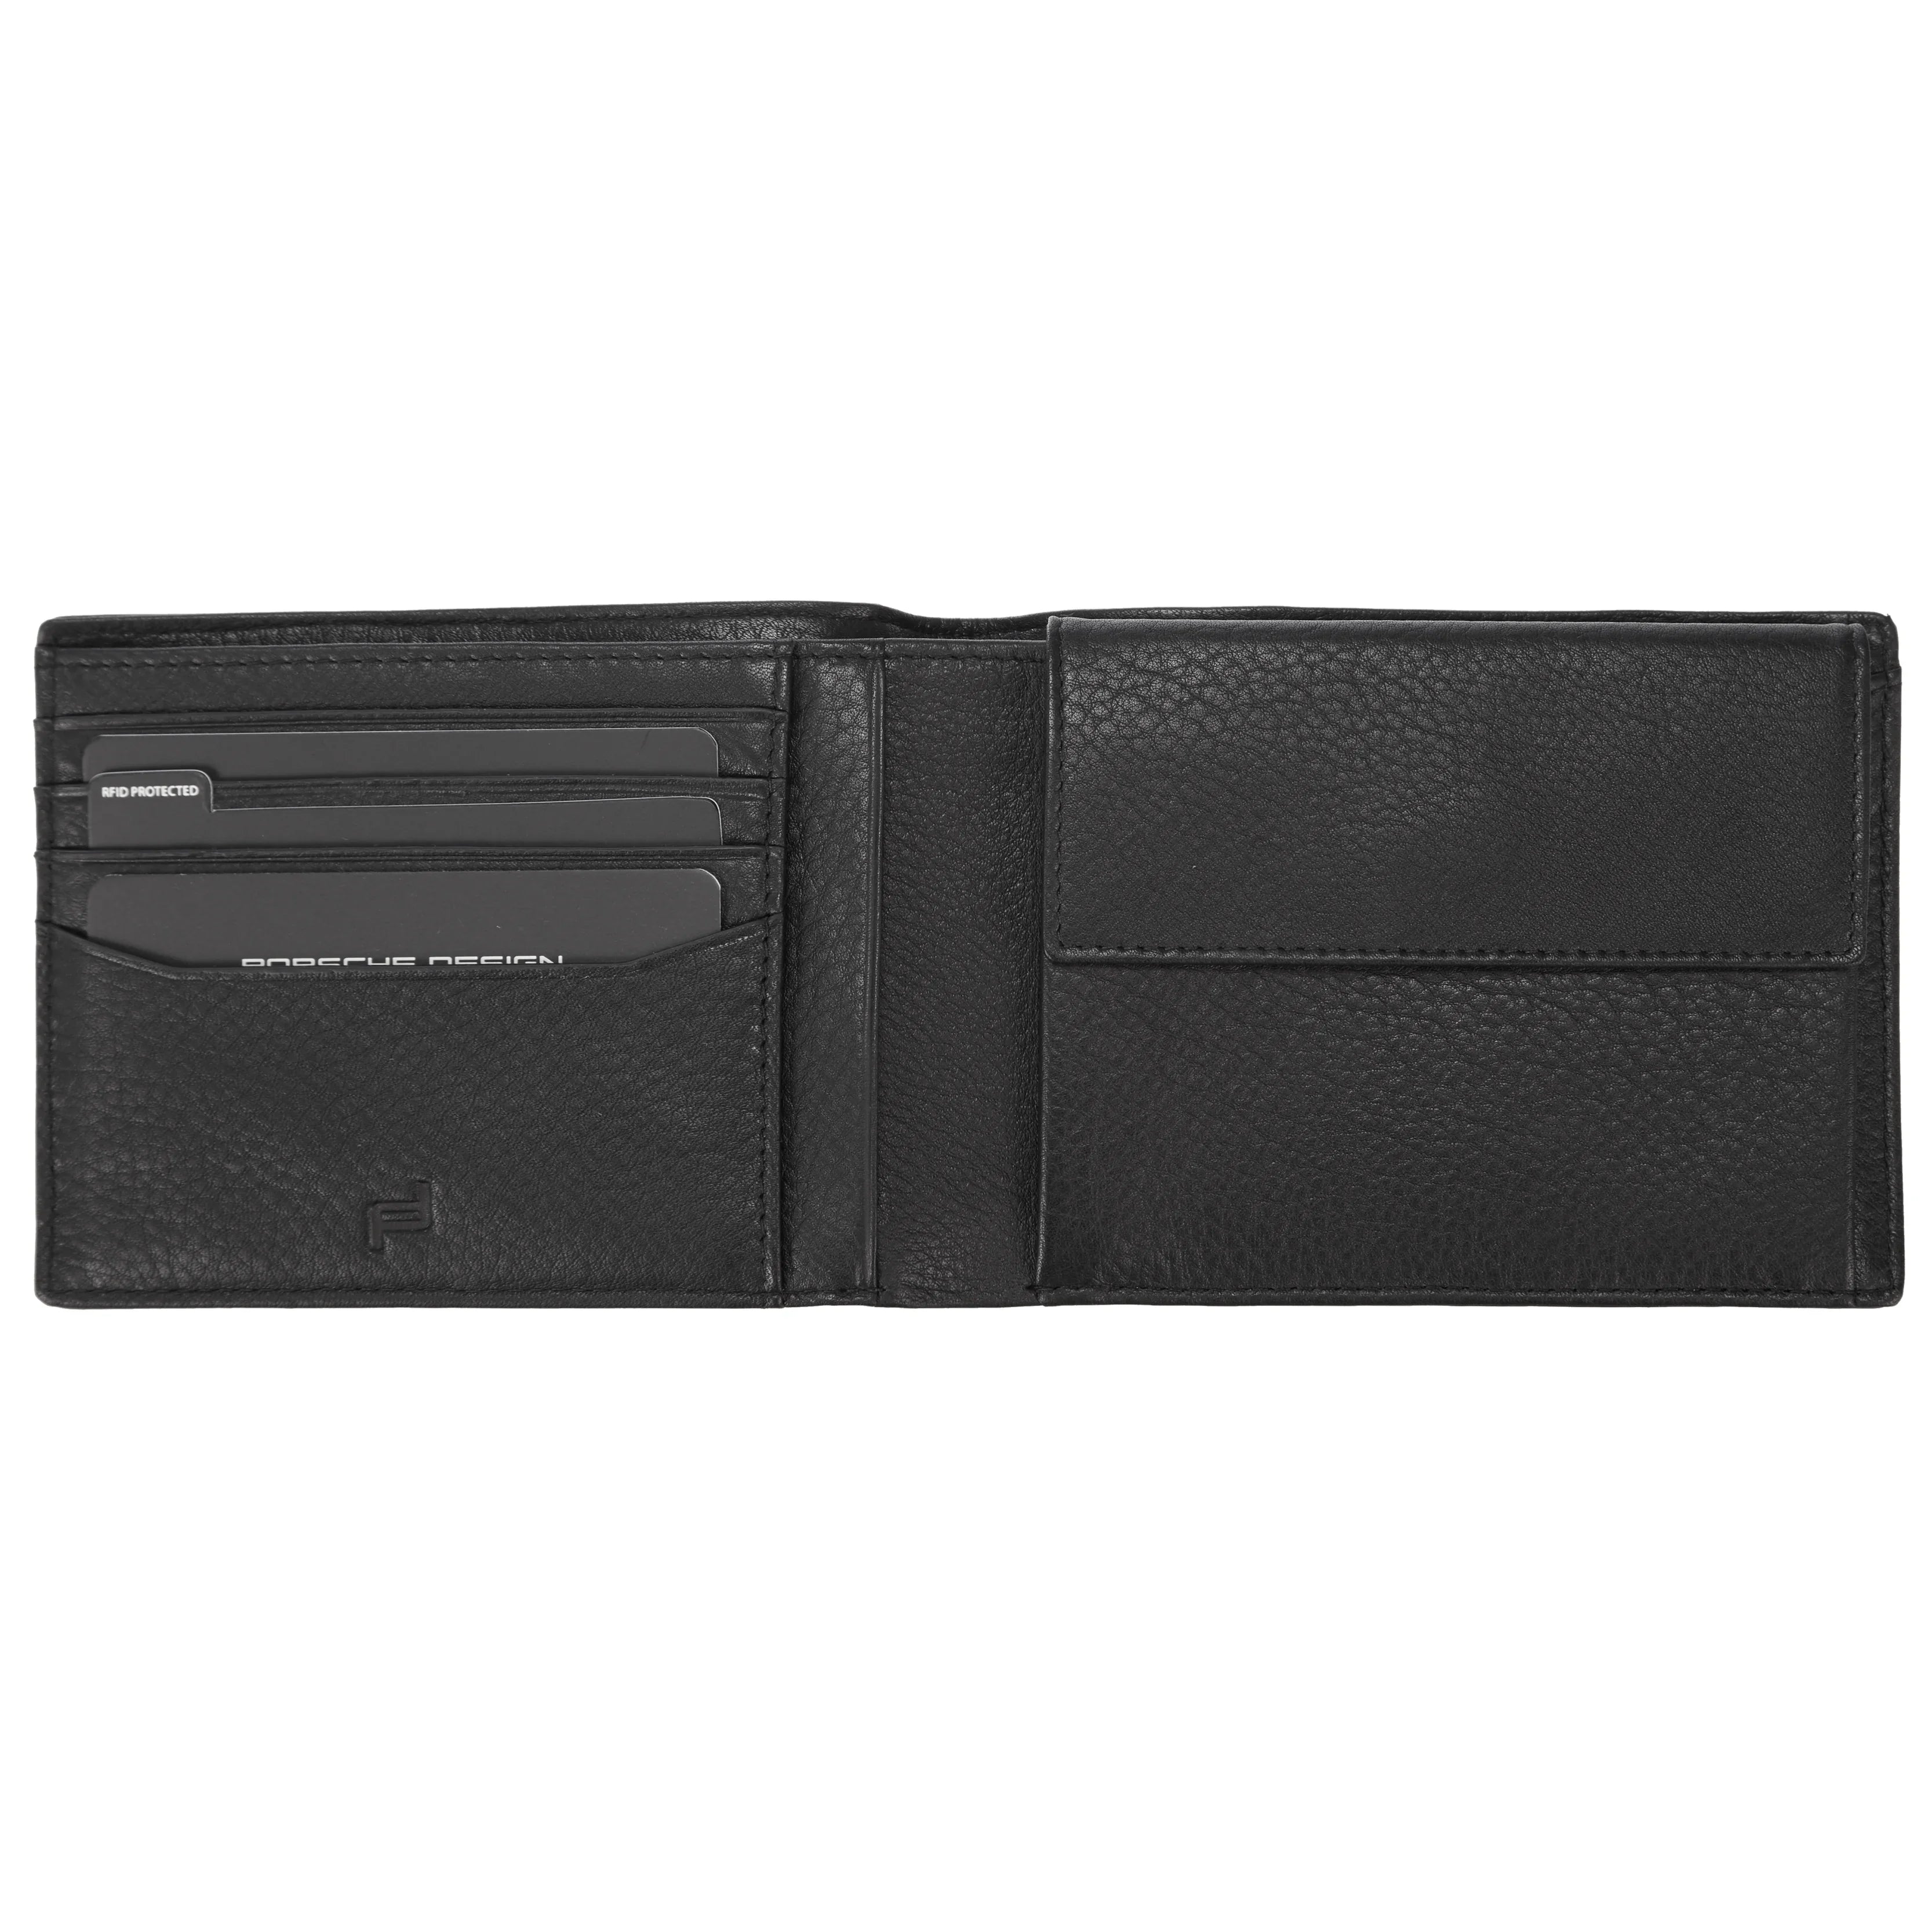 Porsche Design Accessories Business Wallet 4 larges RFID 13 cm - Noir